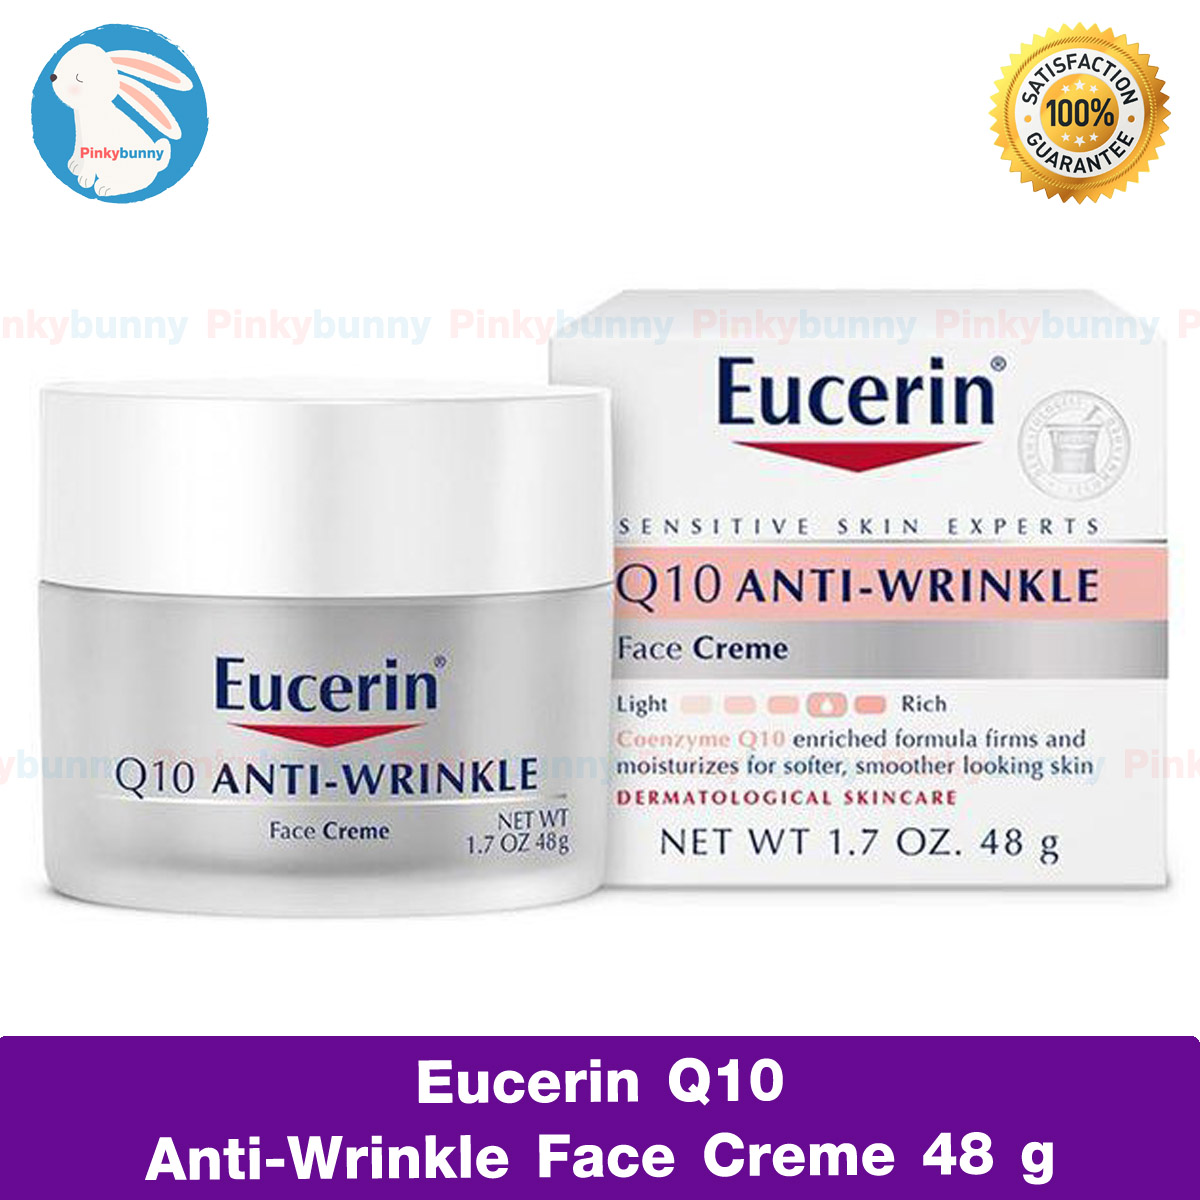 ยูเซอริน ครีมบำรุงผิวหน้า Eucerin, Q10 Anti-Wrinkle Face Creme, 1.7 oz (48 g) ลดเลือนริ้วรอย